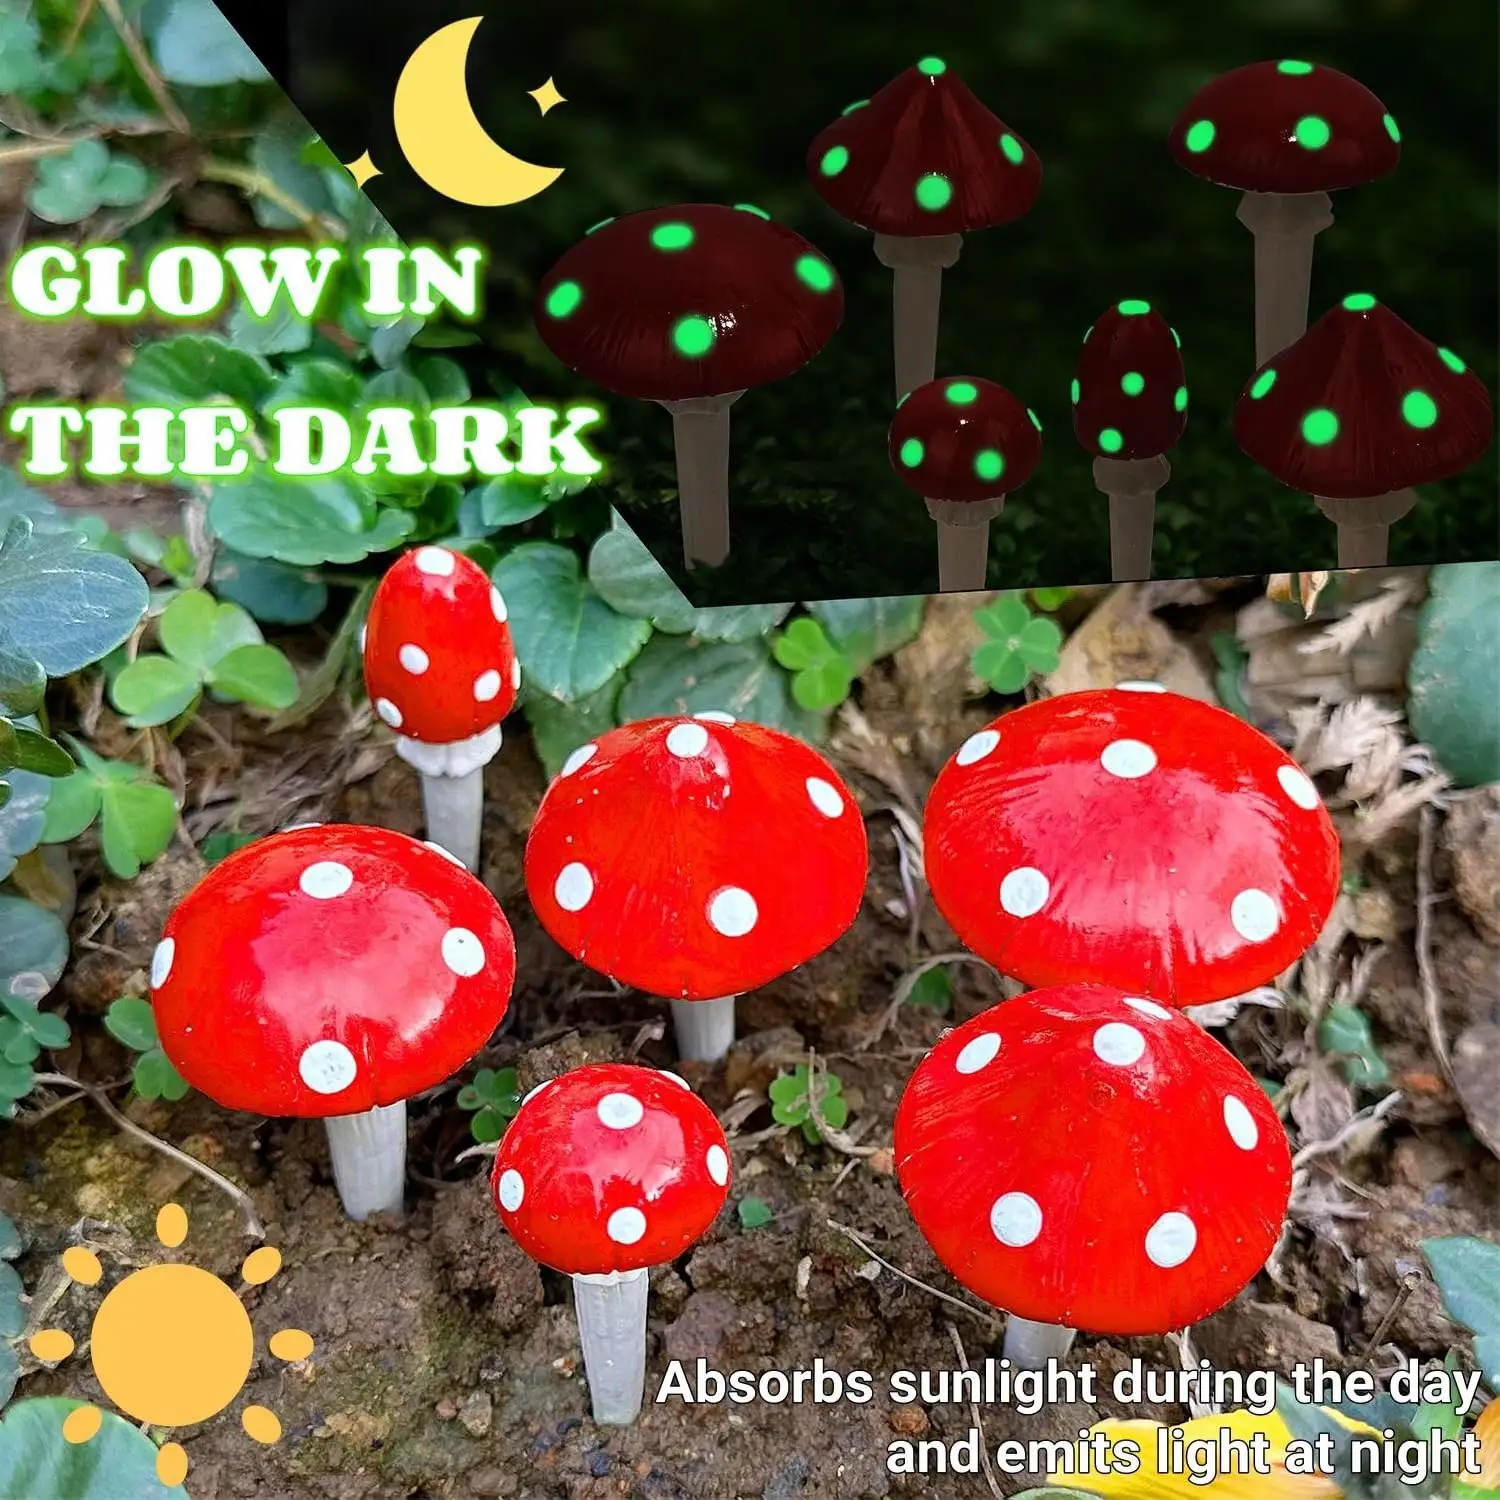 Аксессуары для сказочного сада, украшения для газона, светящиеся в темноте мини-фигурки красных грибов, миниатюрные статуи грибов